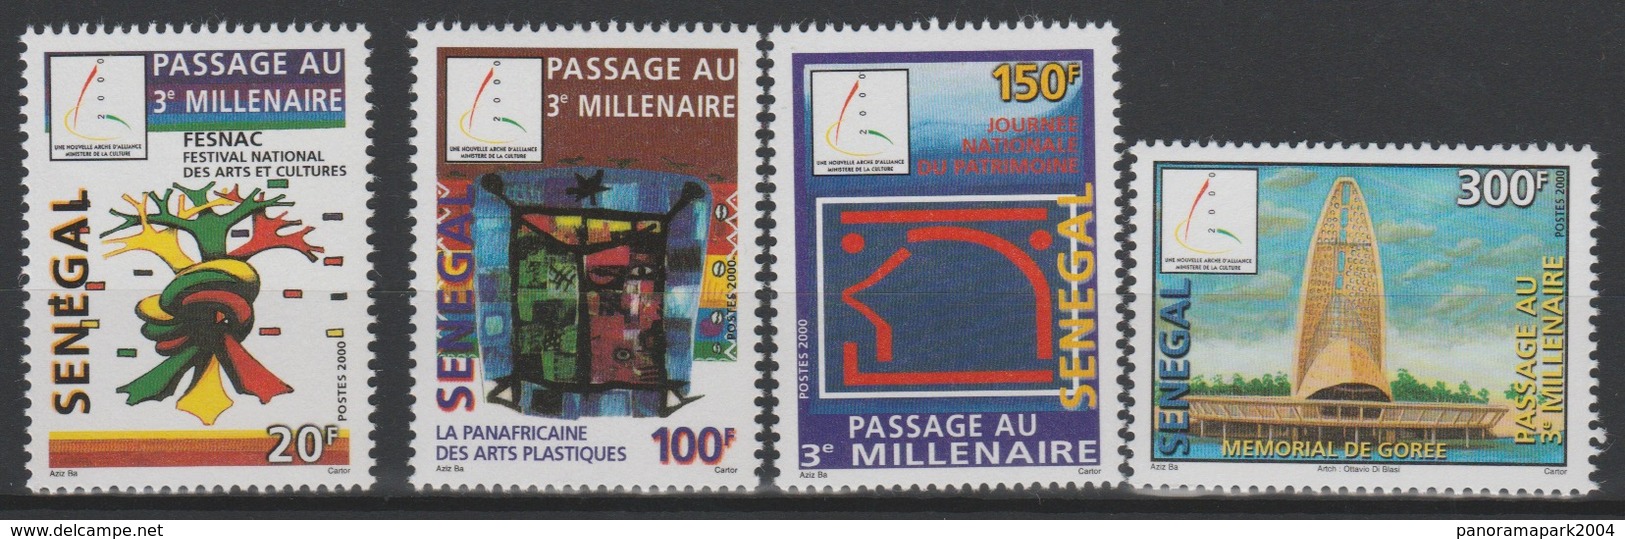 Sénégal 2001 Mi. 1920 - 1923 FESNAC Passage Au 3e Millénaire Jahrtausendwende 3rd Millenary - Senegal (1960-...)